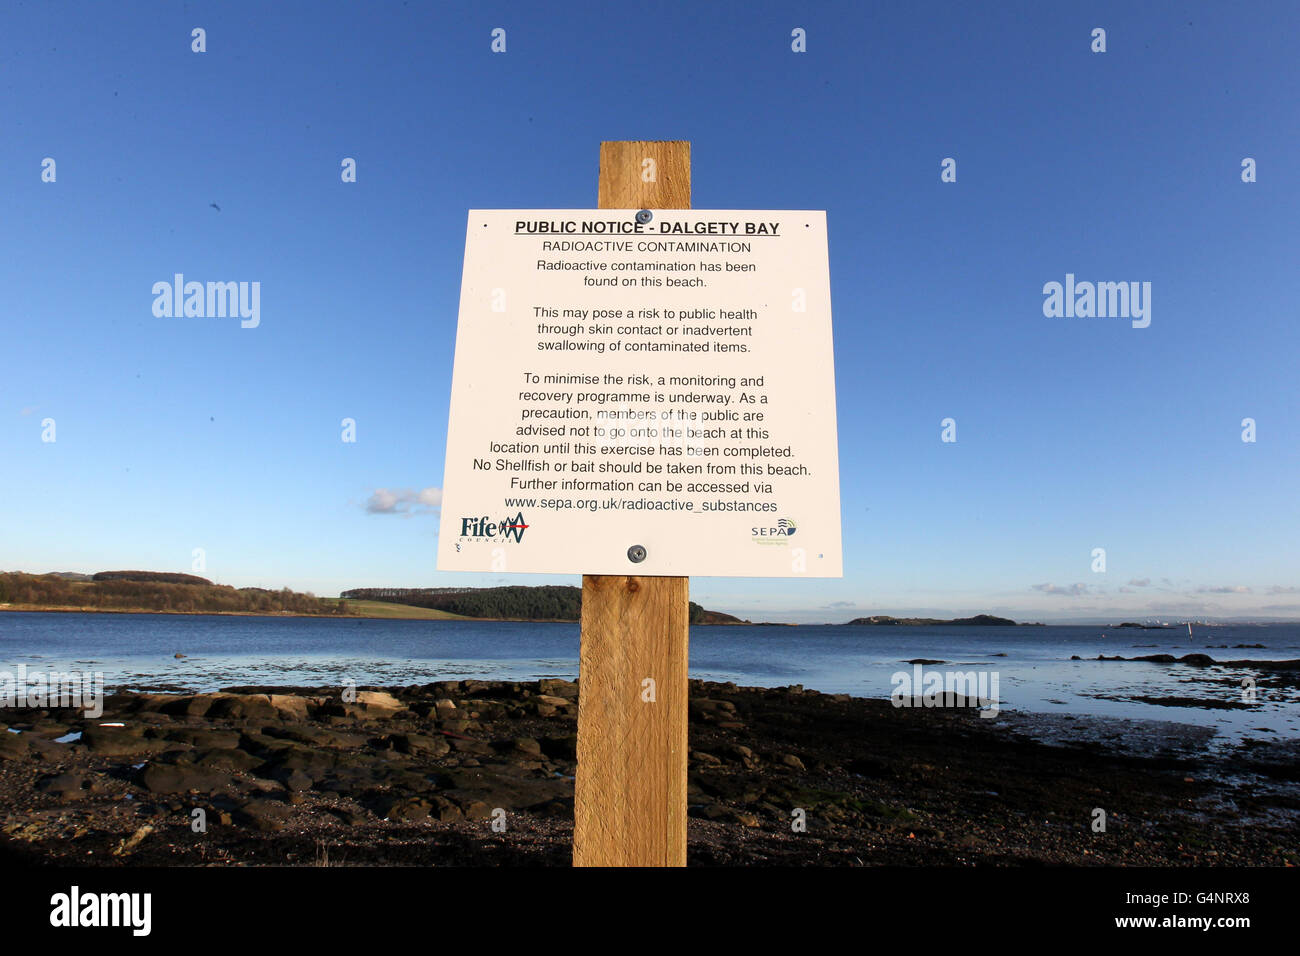 Ein Schild an der Dalgety Bay in Fife als ehemaliger Premierminister Gordon Brown hat das Verteidigungsministerium aufgefordert, sofort Maßnahmen zu ergreifen, um radioaktive Partikel am schottischen Strand zu behandeln. Stockfoto